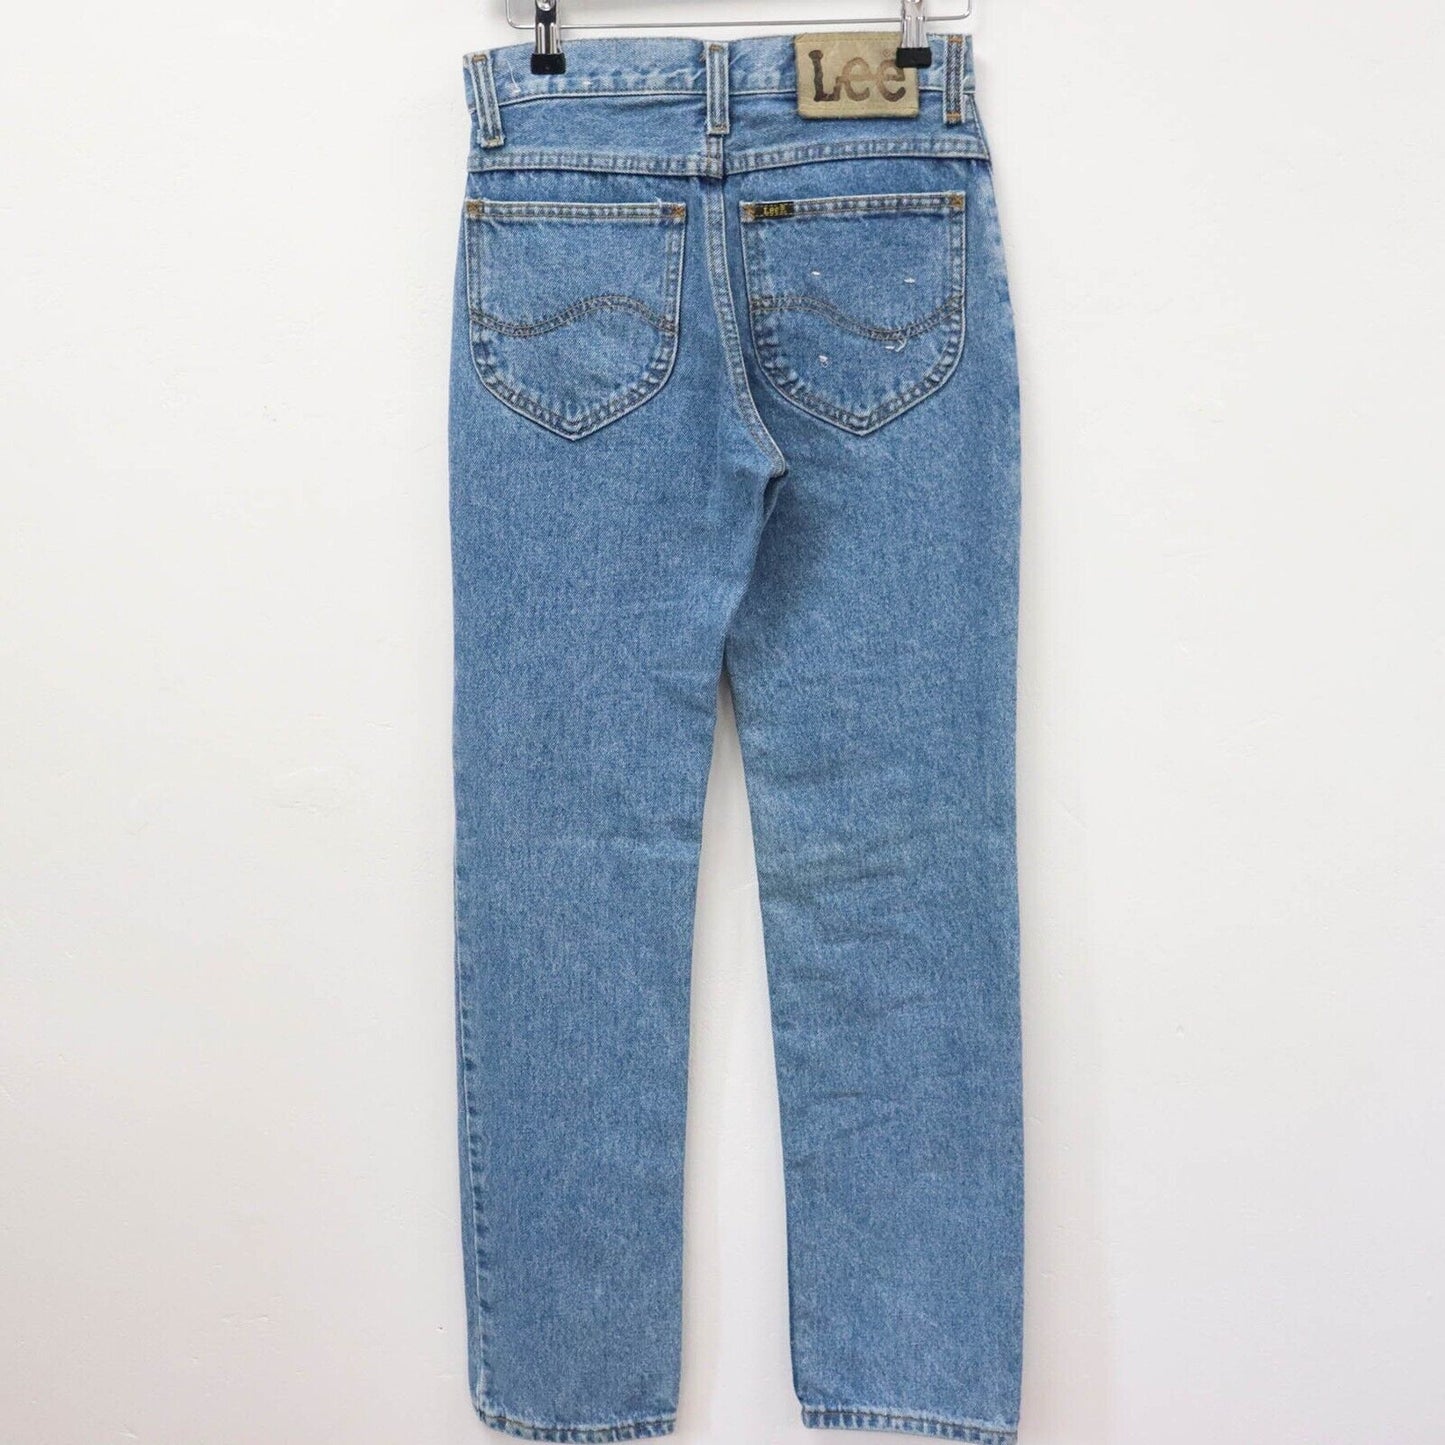 Deadstock 90s Lee Straight Leg Jeans Size UK 8 W26 L31